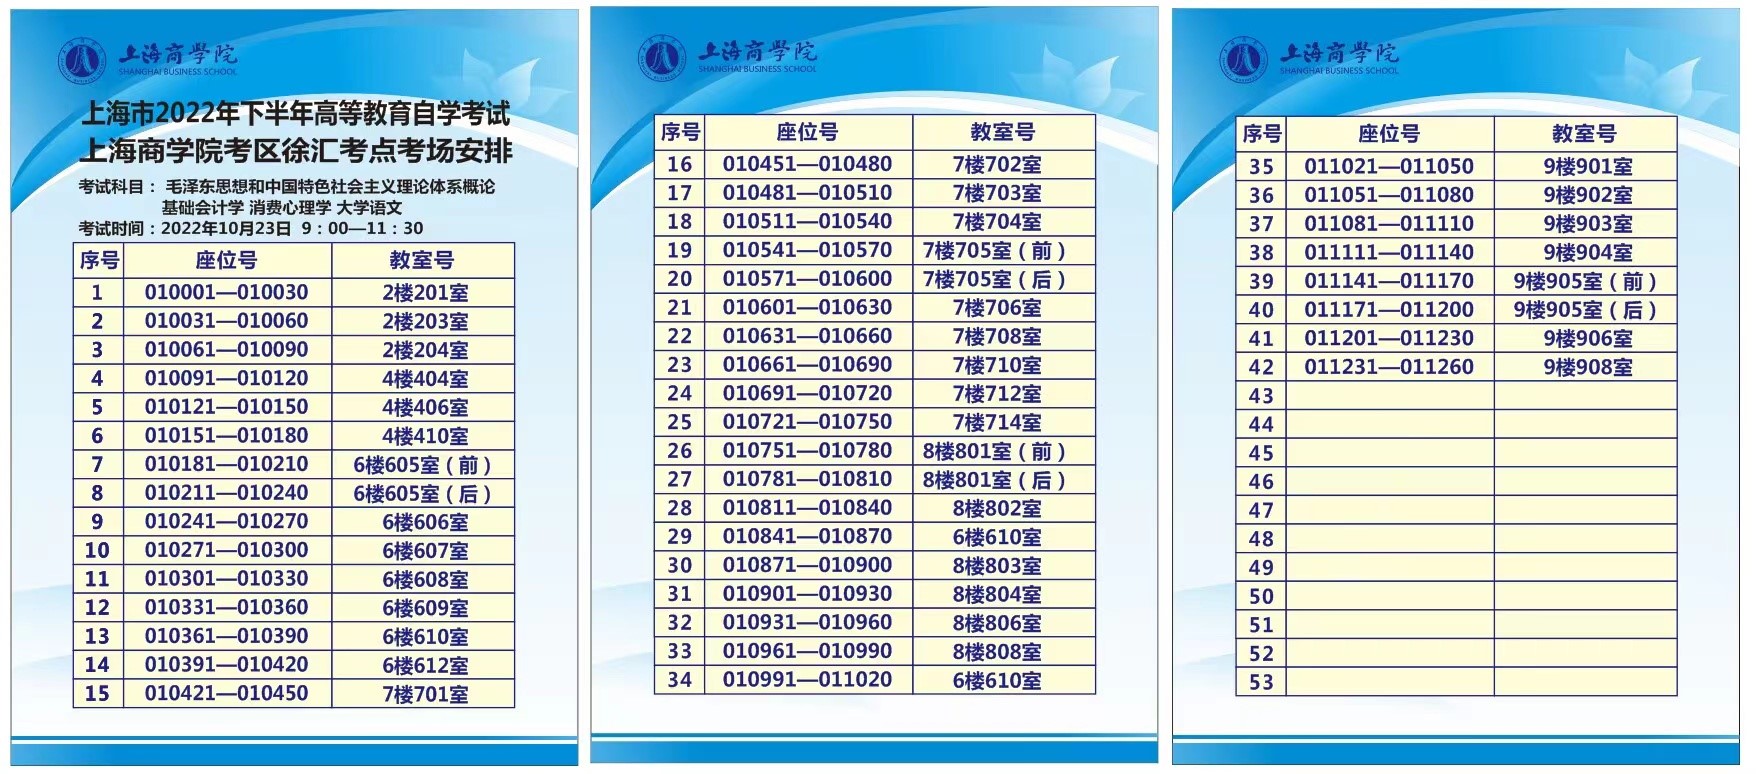 上海商学院关于2022年下半年高等教育自学考试注意事项及疫情防控温馨提示